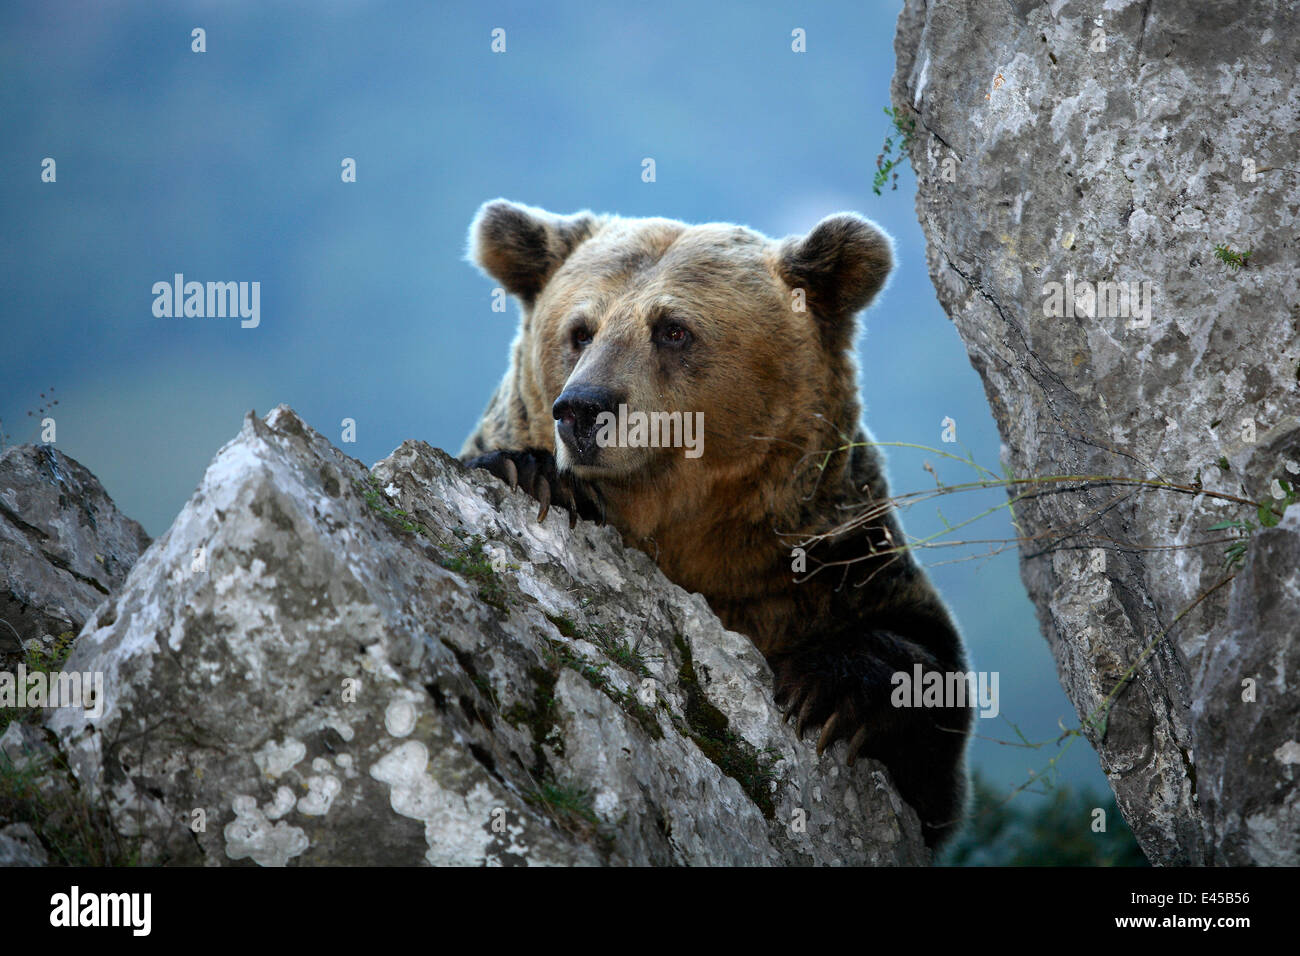 Pyrenean brown bear (Ursus arctos pyrenaicus) resting on rocks, Spanish Brown Bear Foundation, Cantabrian mountains, Asturias, Spain Stock Photo